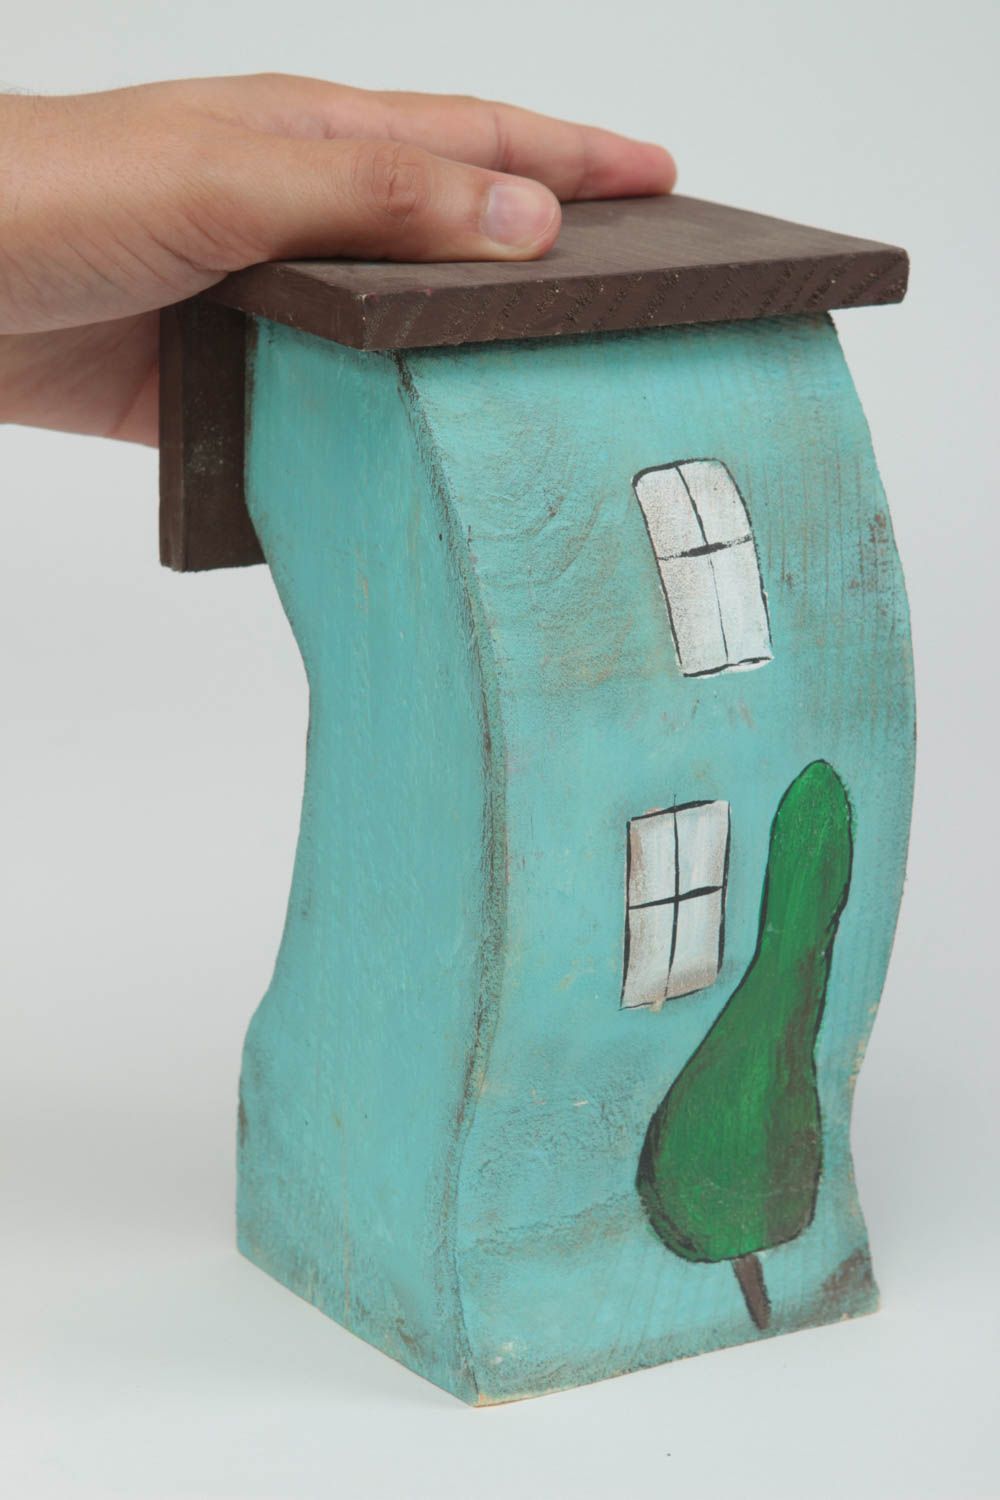 Фигурка из дерева домик изогнутый в голубых тонах красивый стильный хэнд мейд фото 5